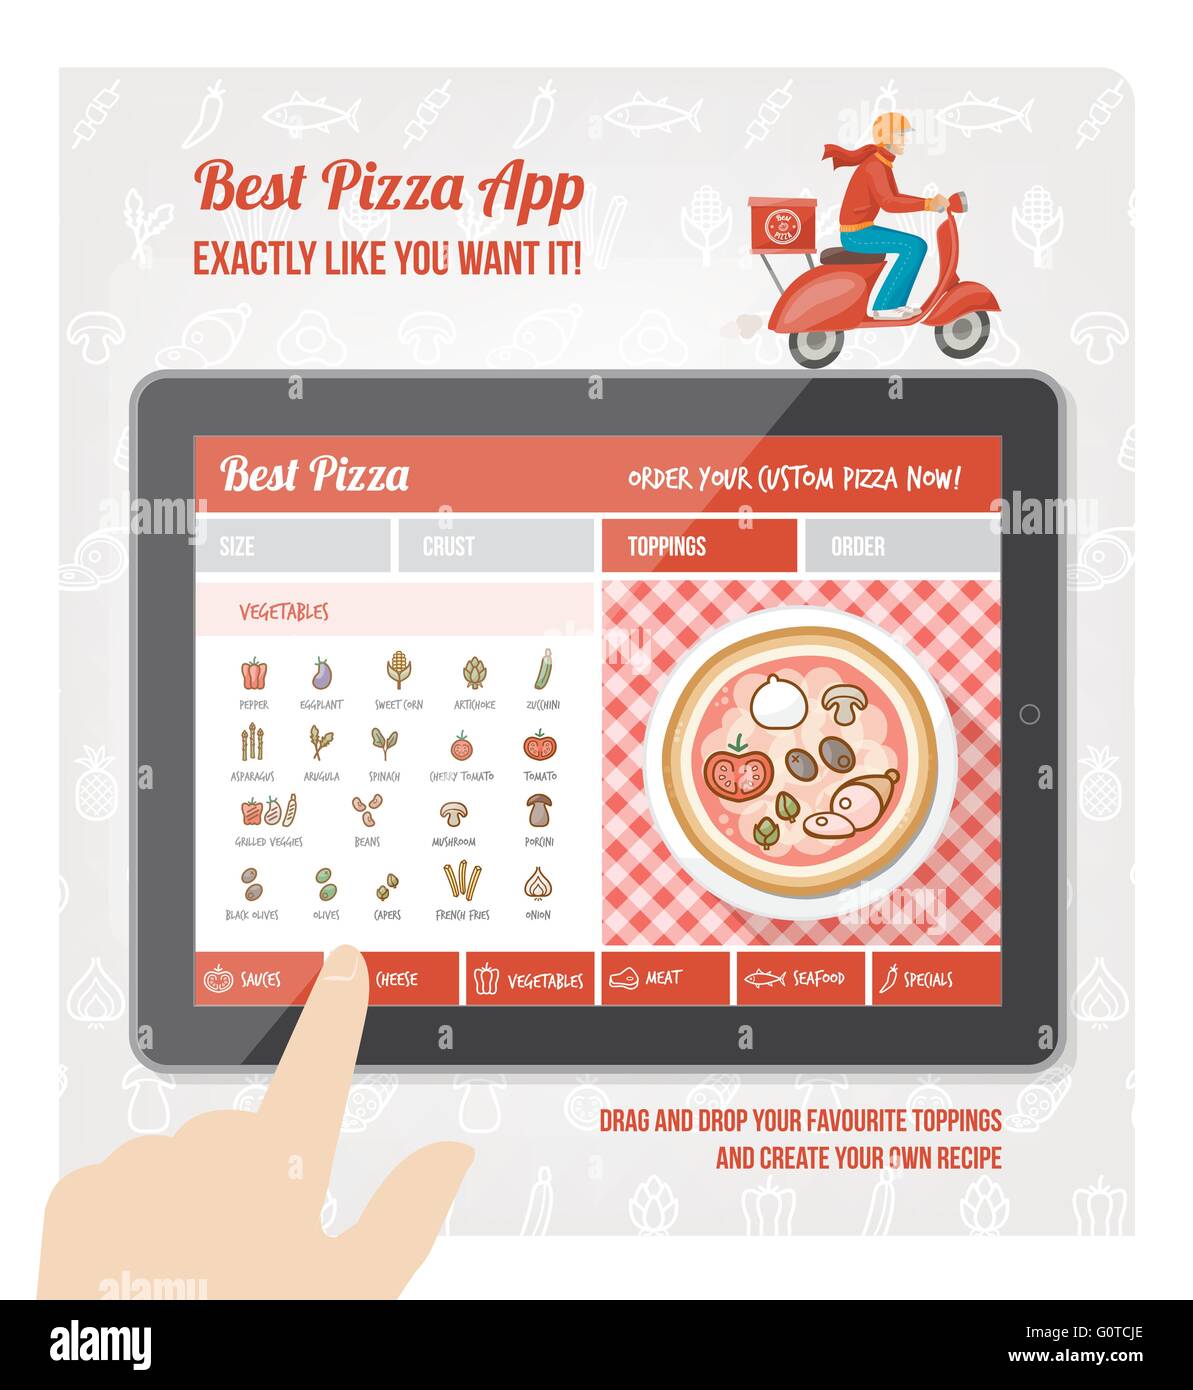 La mejor pizza app diseño de interfaz con el ingrediente y iconos en pantalla tableta Ilustración del Vector